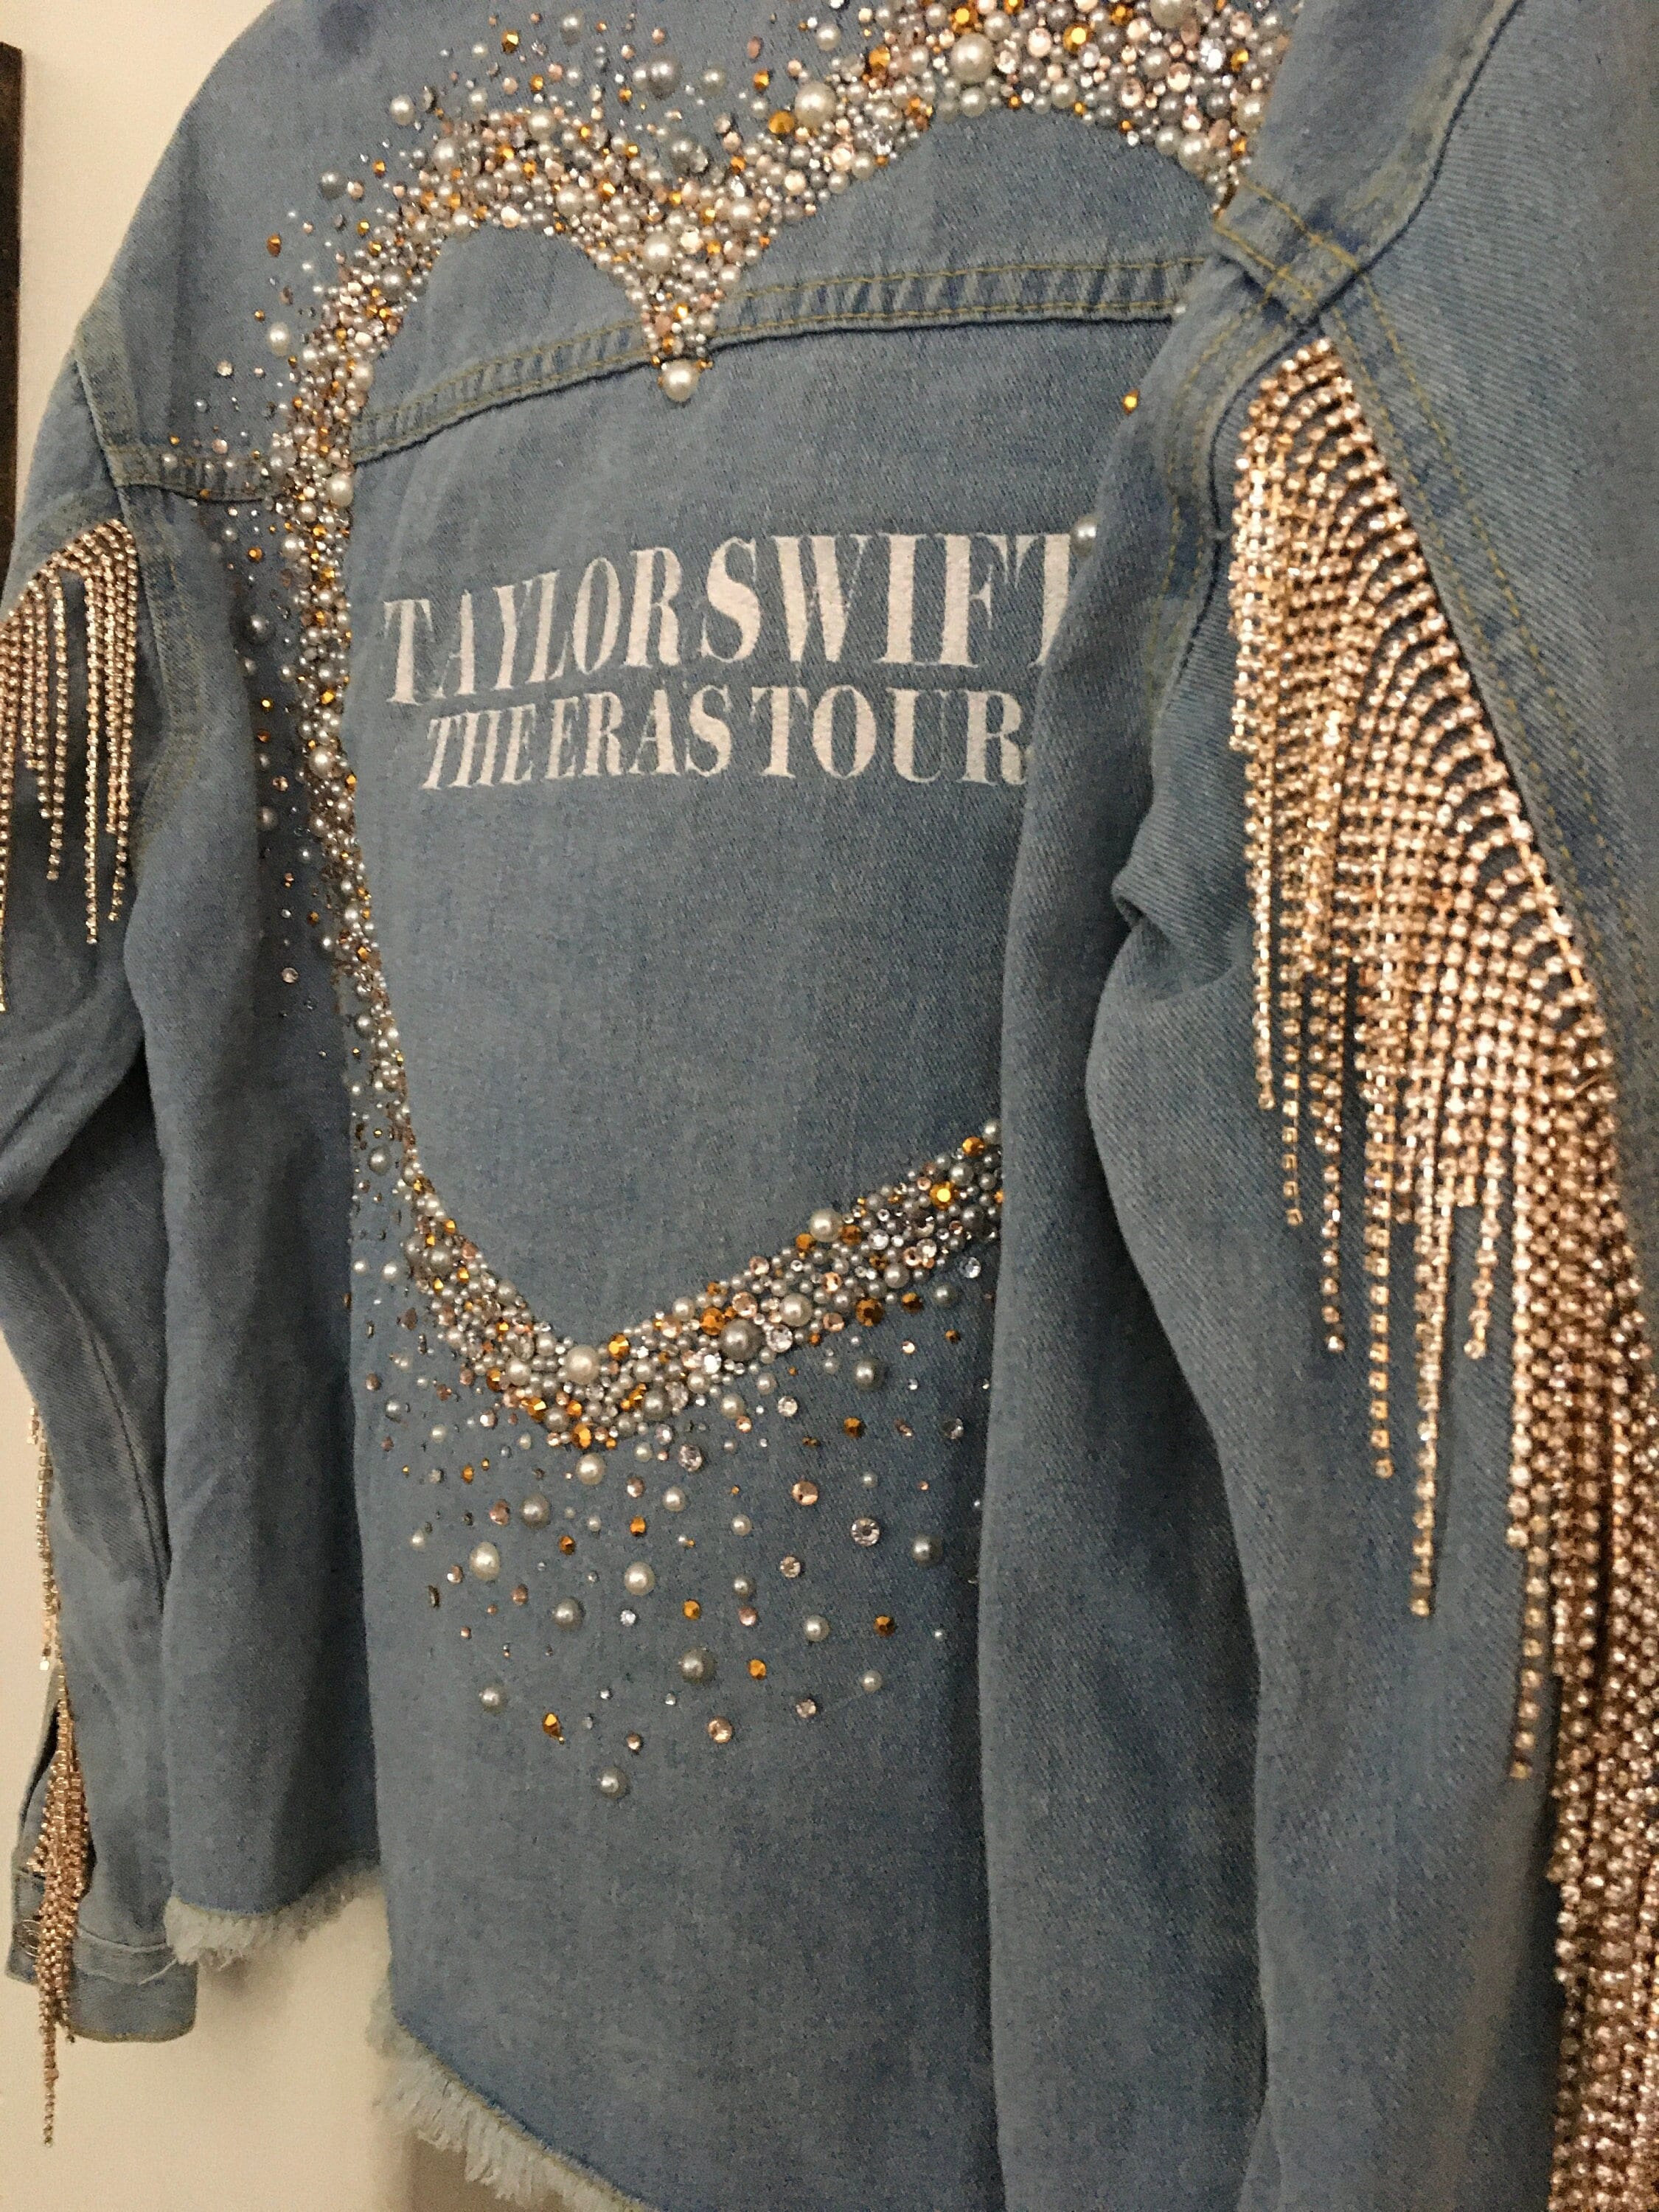 Taylor Swift Folklore Evermore the Eras Tour Denim Jacket Iron on